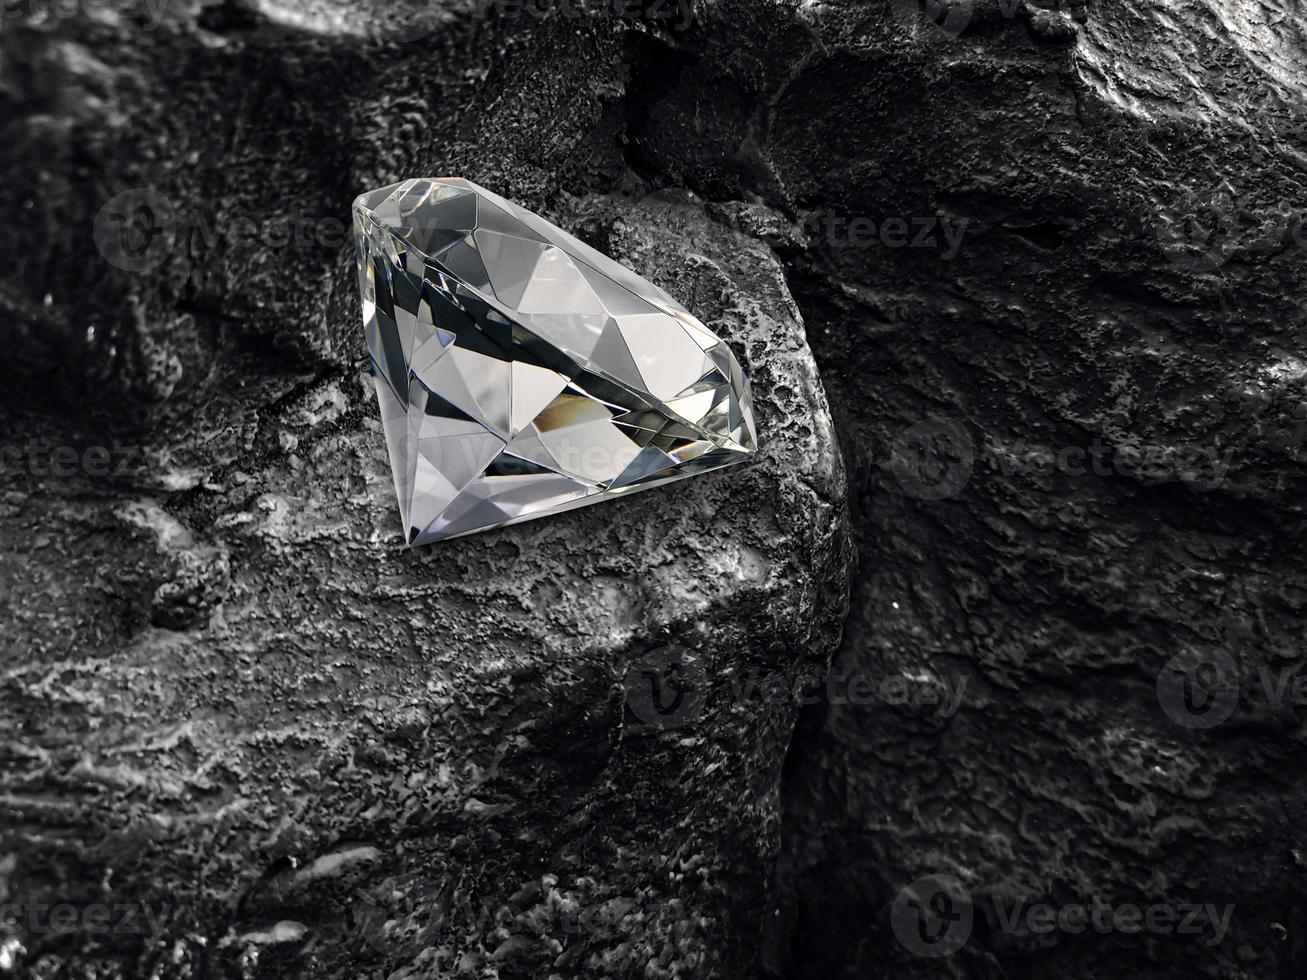 diamante em fundo de carvão preto foto